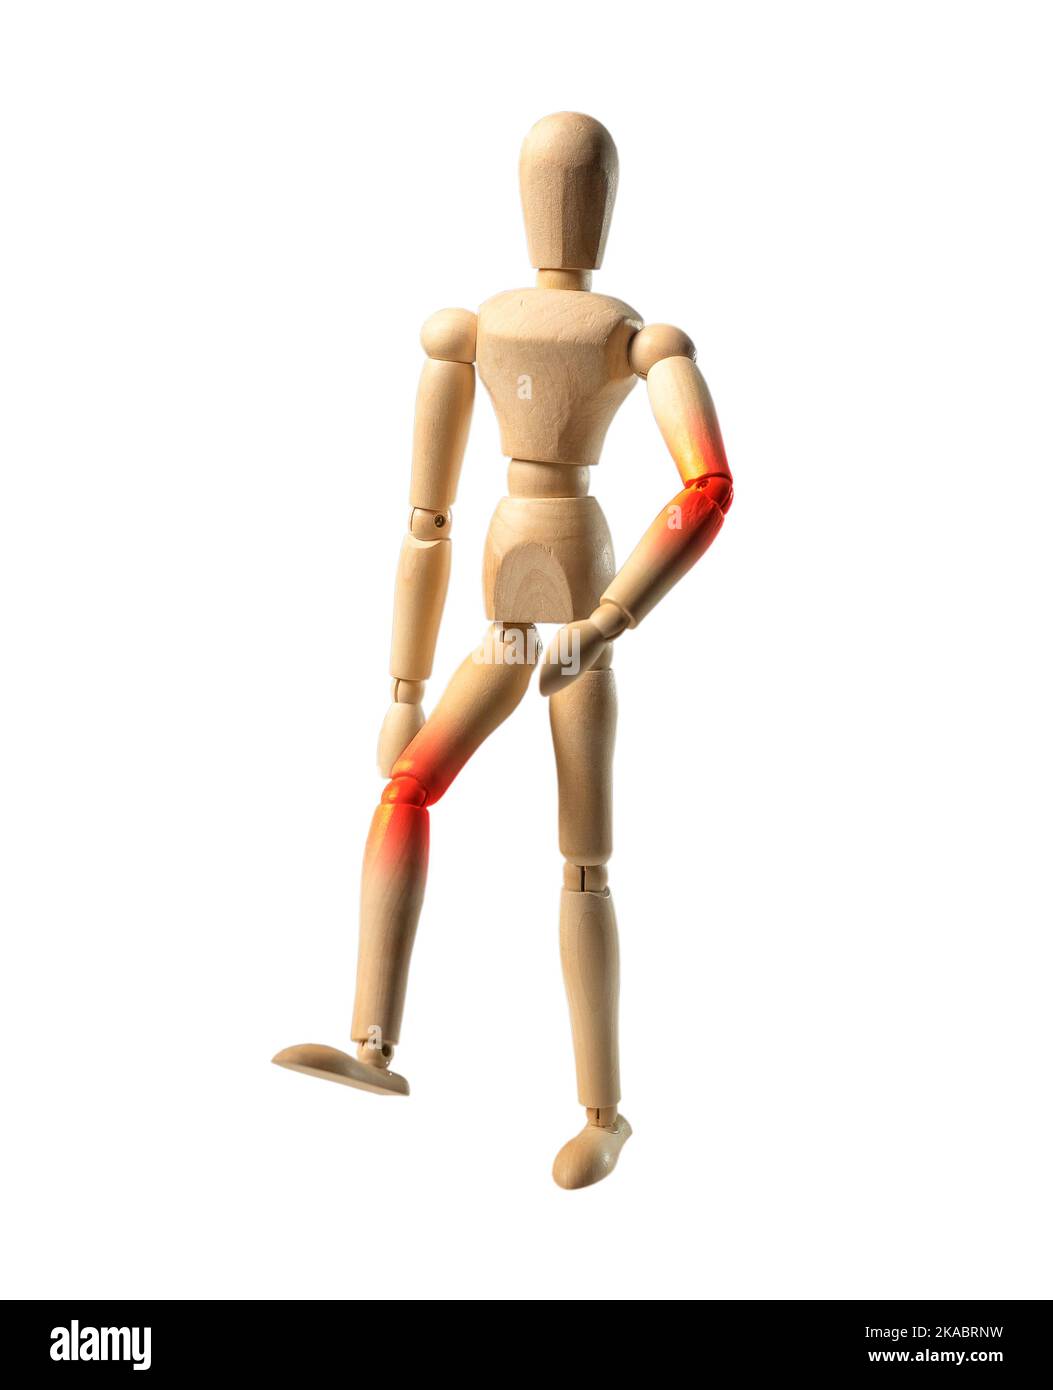 Concetto di dolori articolari. Bambola di legno che cammina con dolore al gomito e al ginocchio. Manichino in legno in movimento, in movimento. Foto Stock